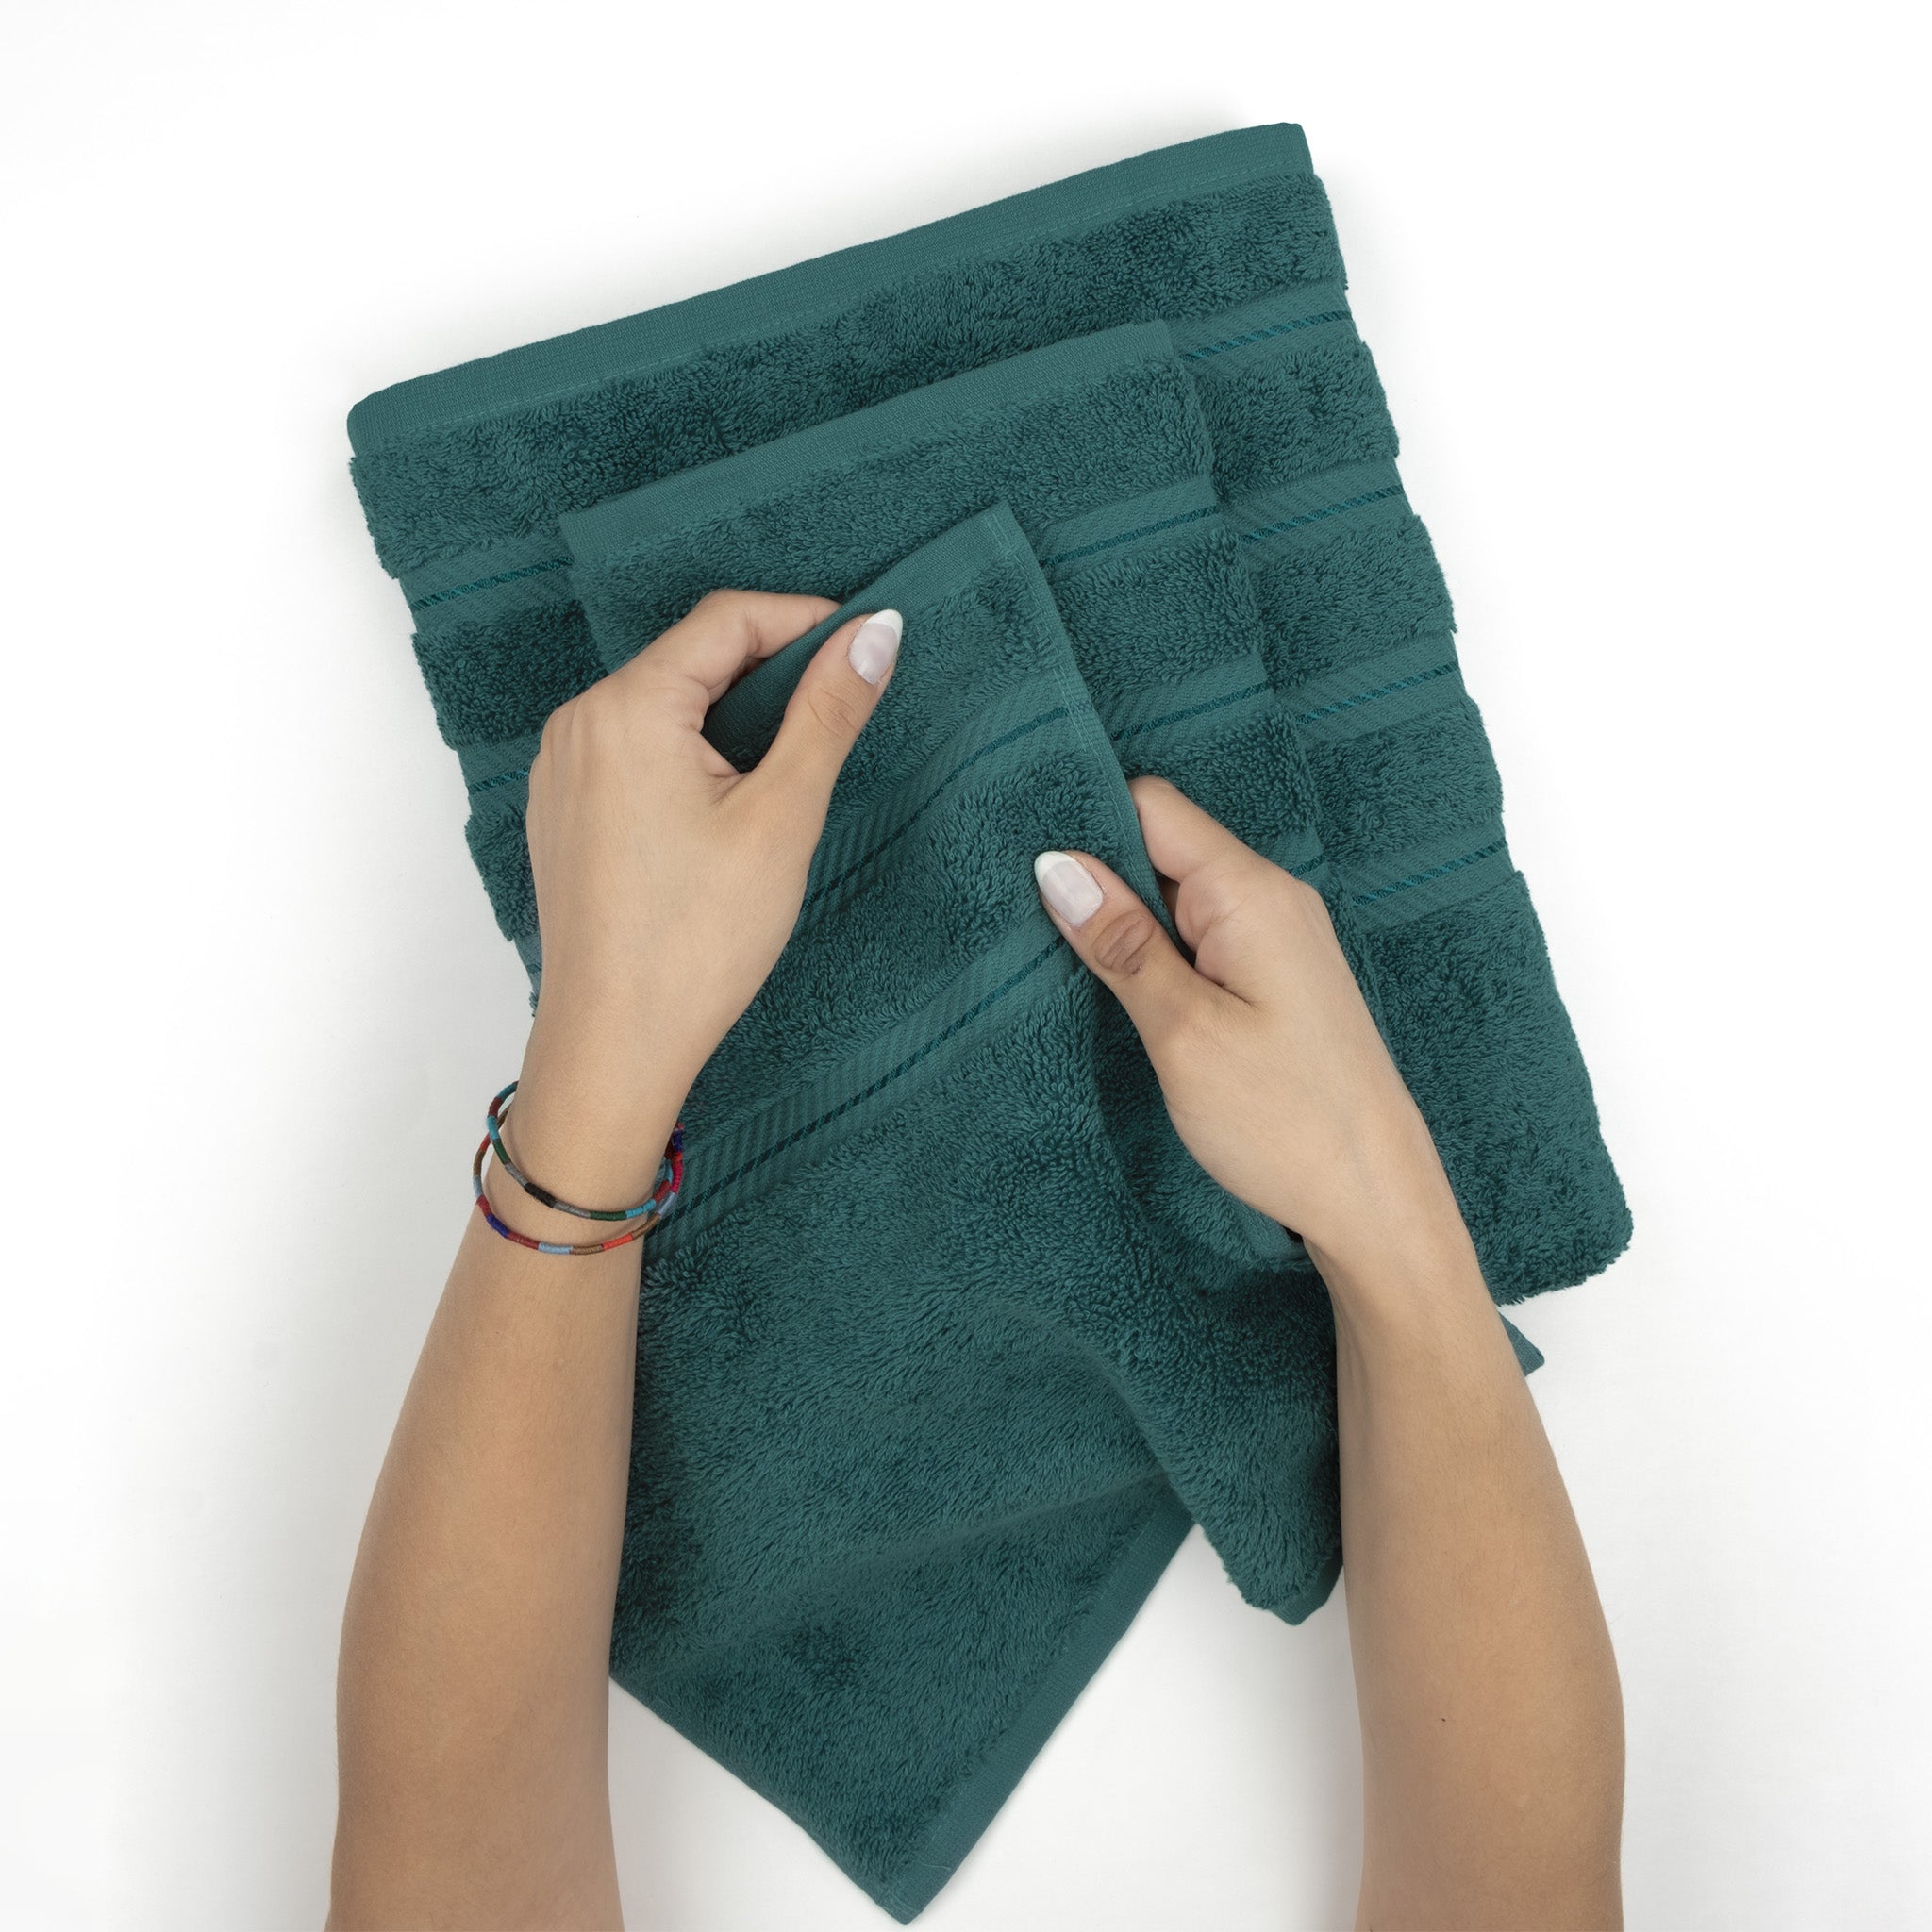 American Soft Linen 100% Turkish Cotton 4 Pack Bath Towel Set Wholesale colonial-blue-5